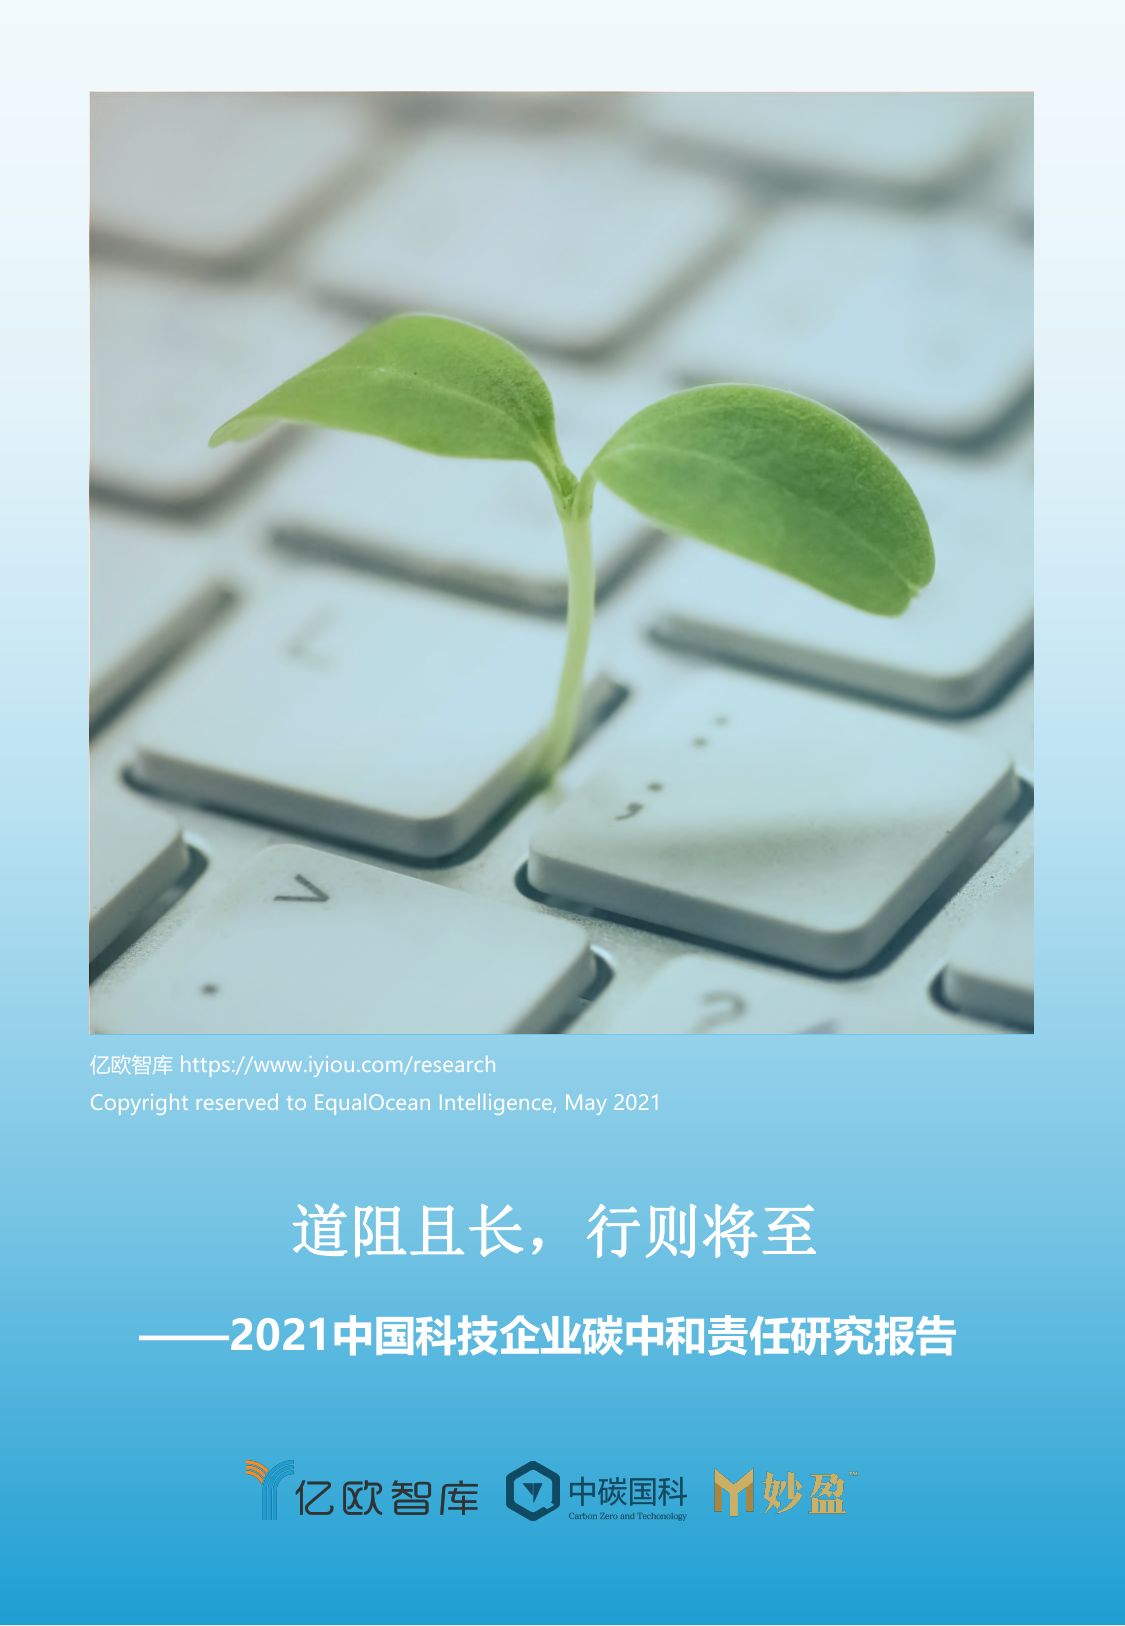 亿欧智库《中国科技企业碳中和责任研究报告》